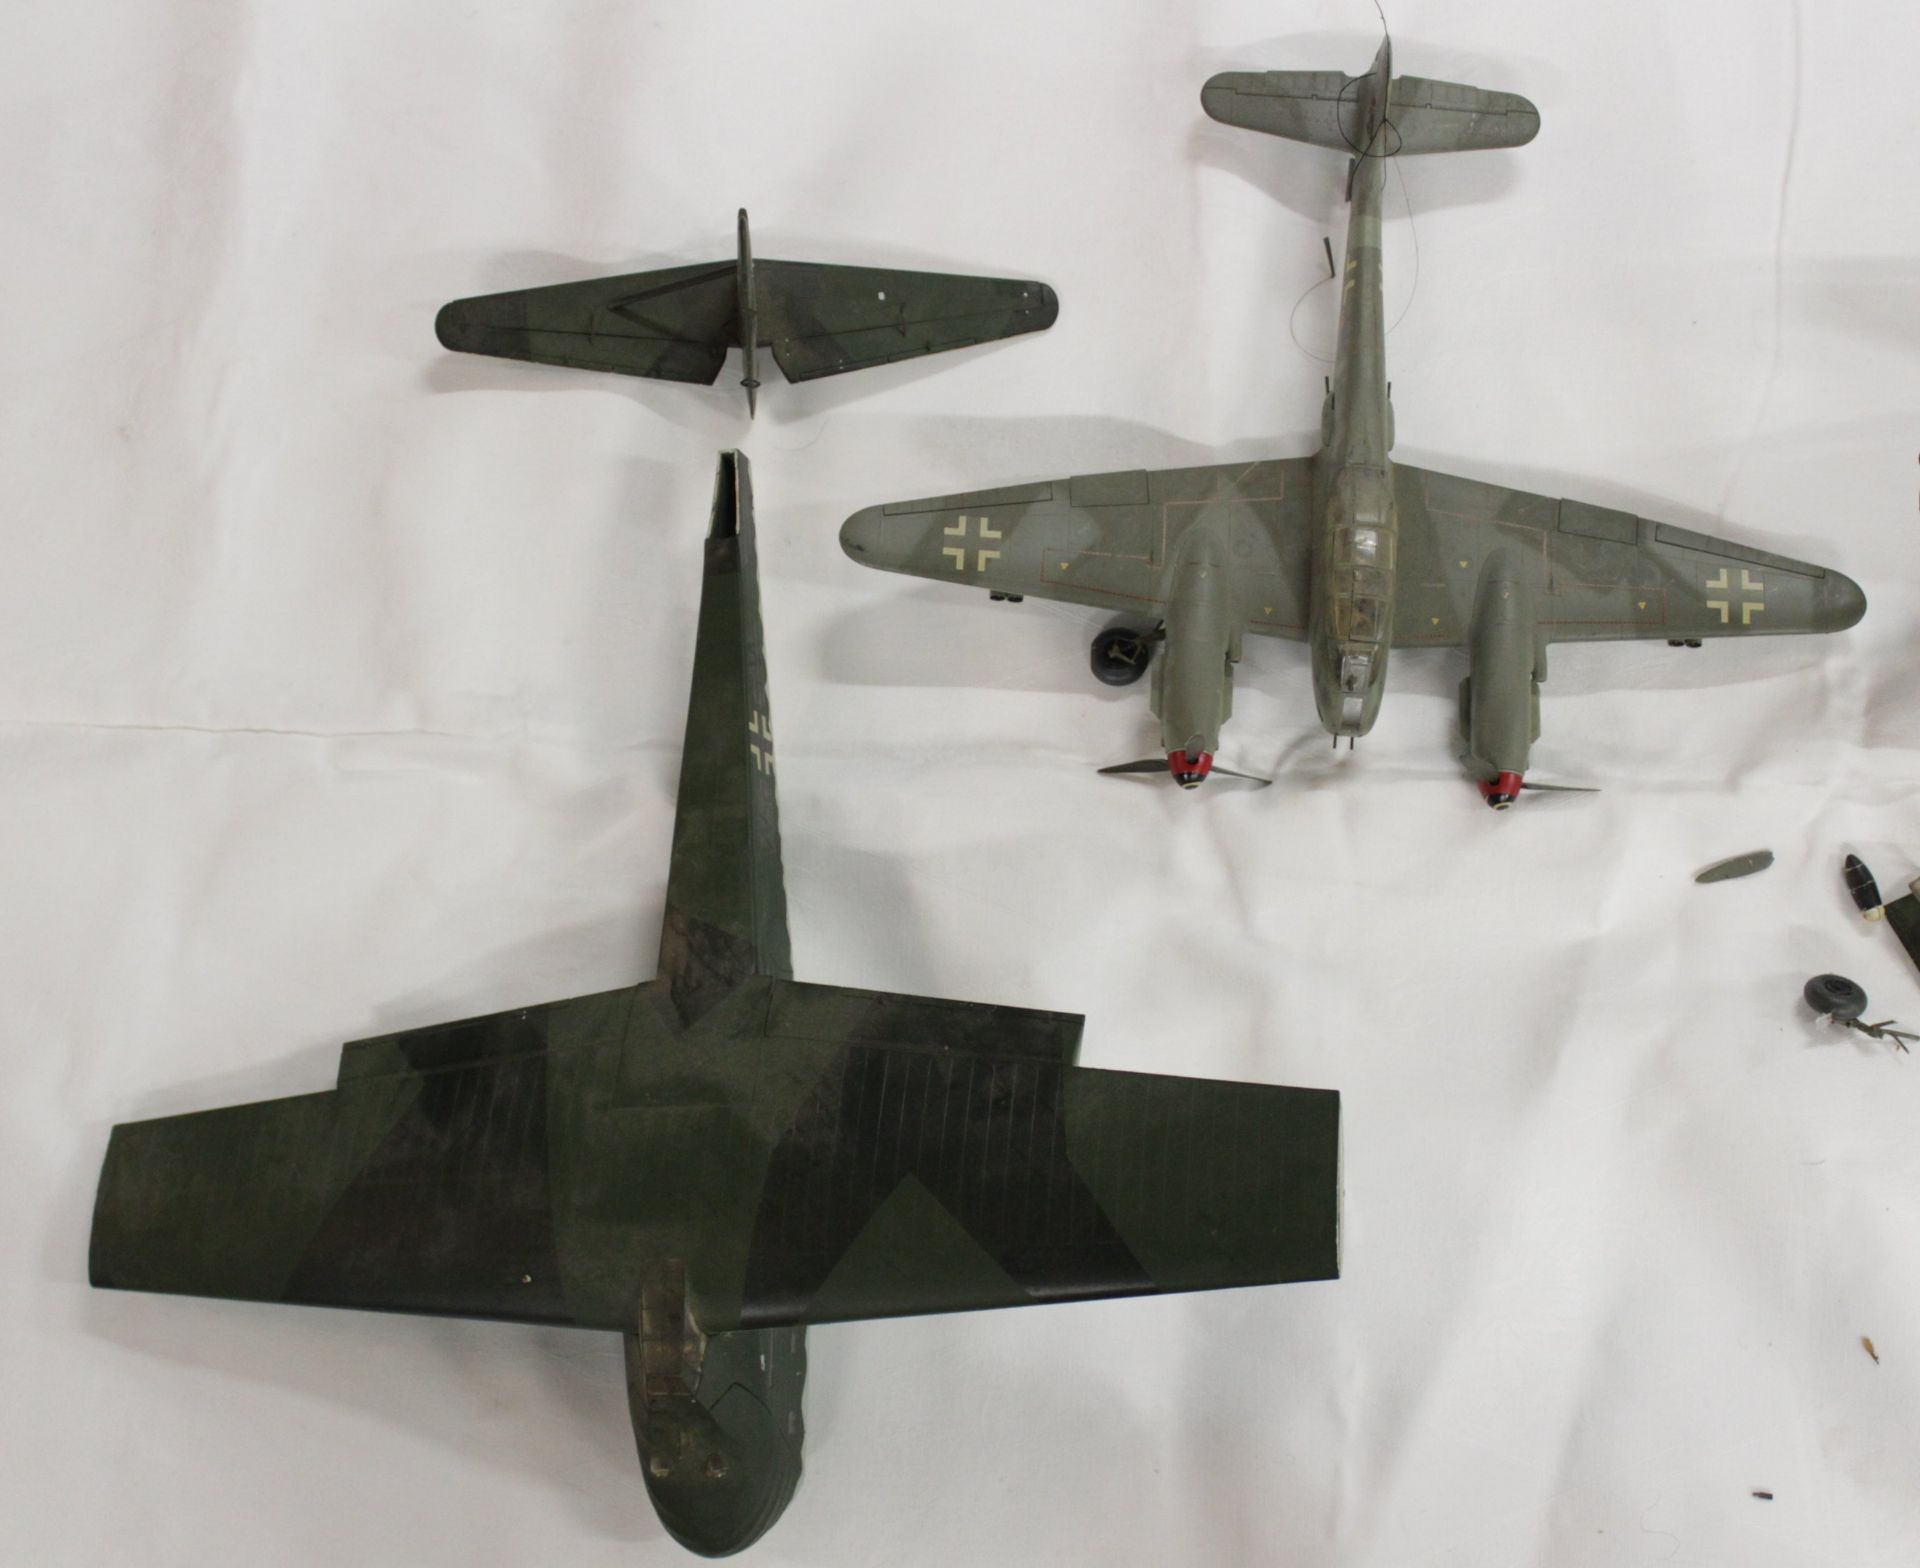 Konvolut div. Modell-Flugzeuge, meist mit Beschädigung (Teile lose, abgebrochen etc.), Vollständigk - Image 5 of 15